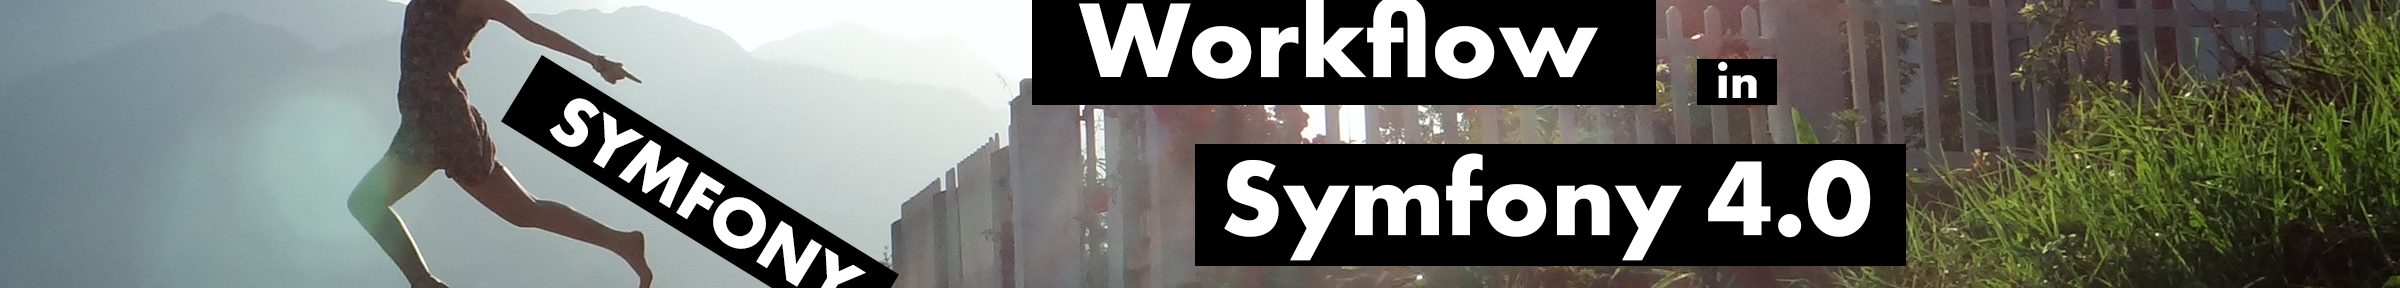 Symfony Flex – der neue Workflow in Symfony 4